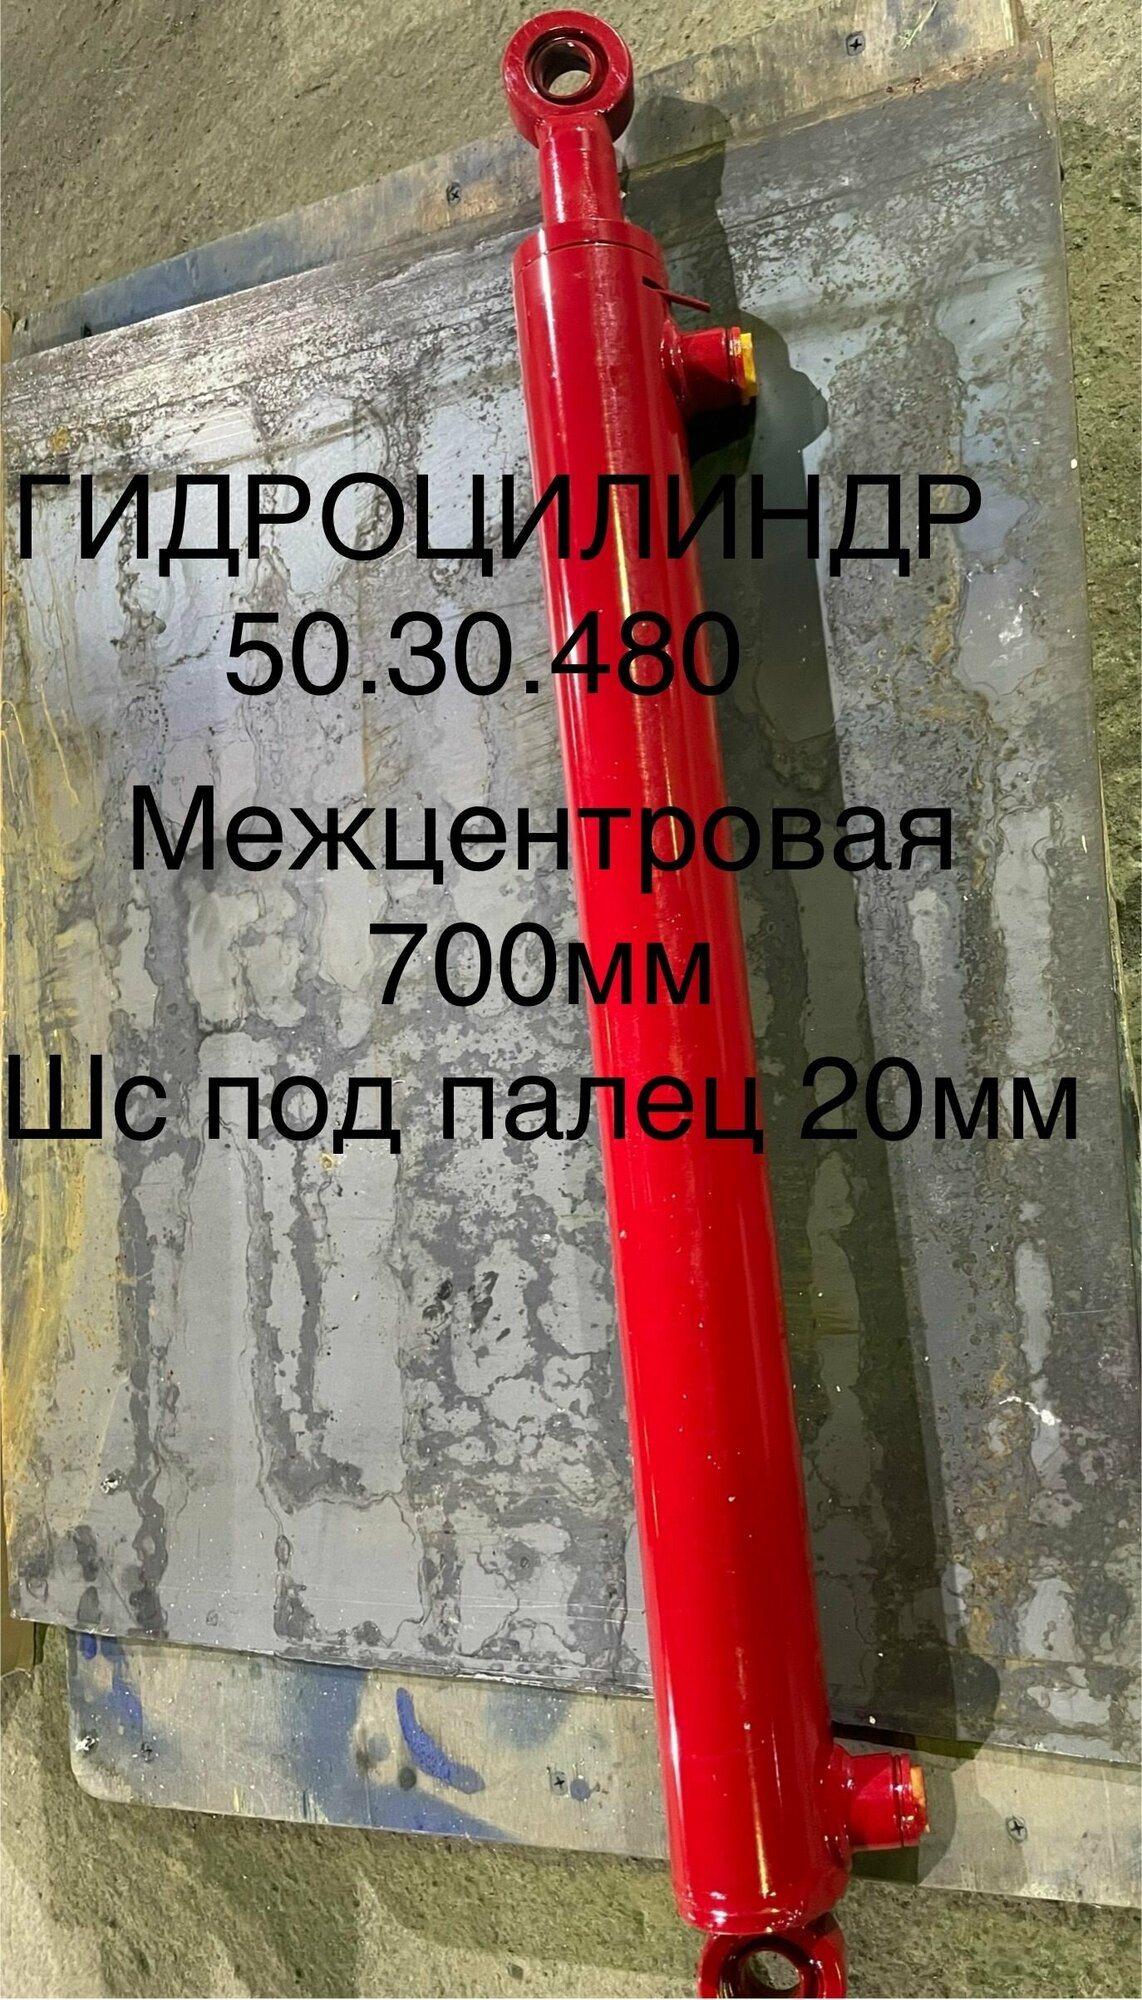 Гидроцилиндр ГЦ 50.30.480 - Гидравлика-Сервис